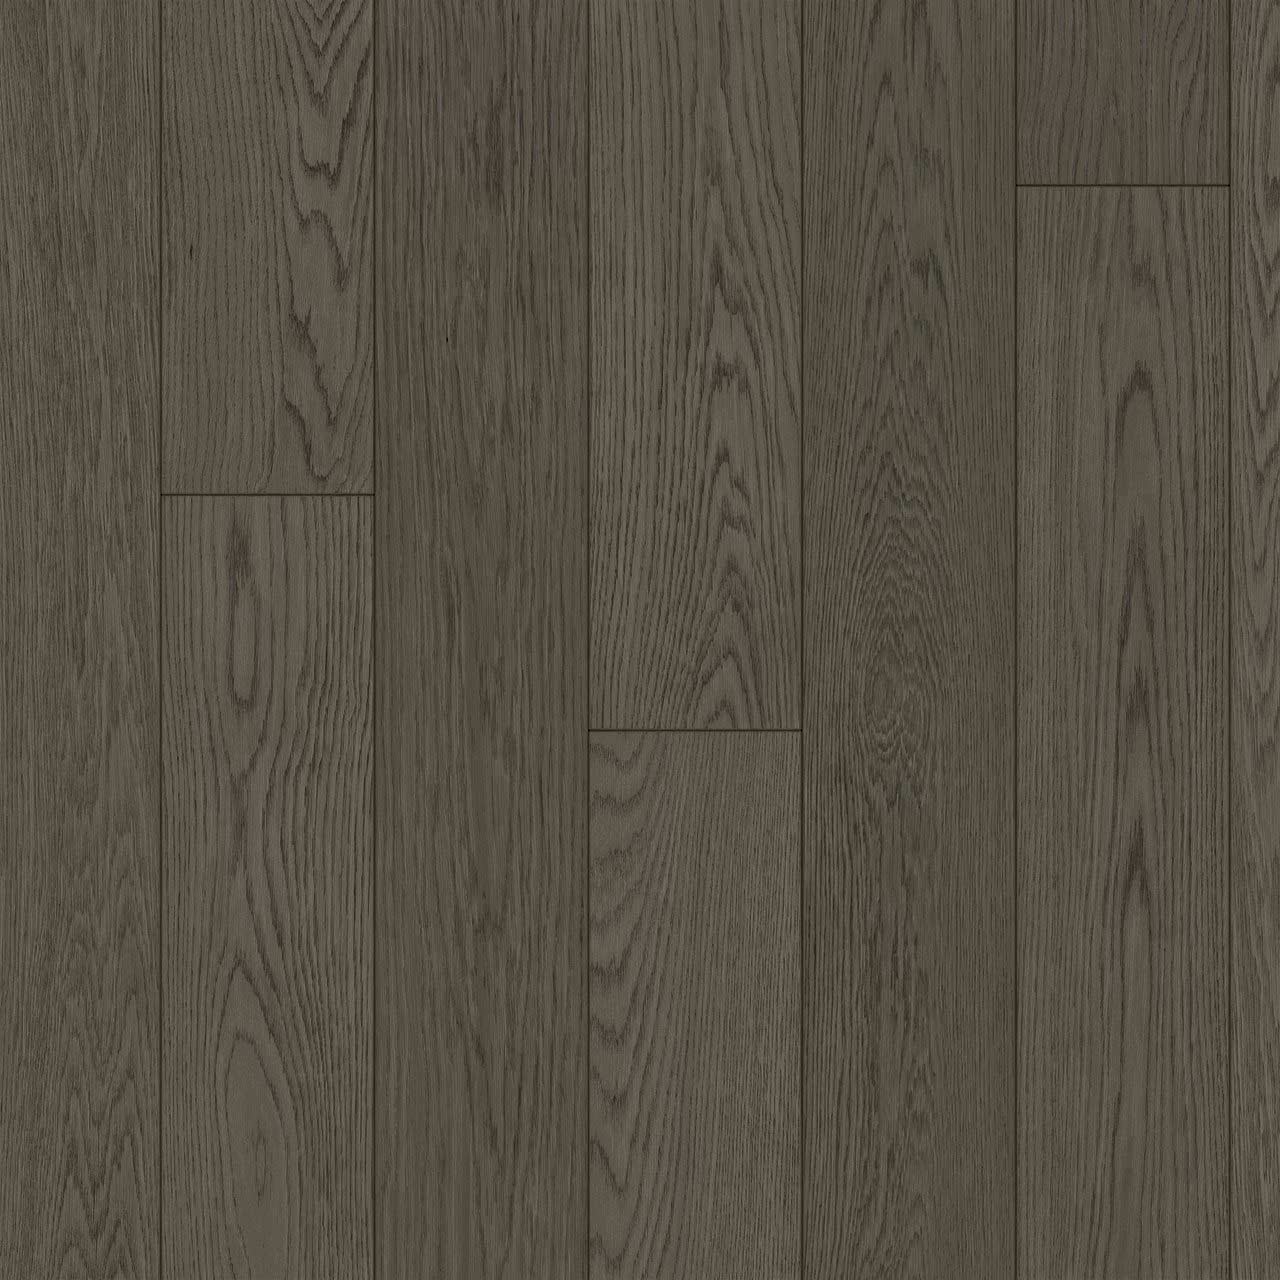 Hardwood SolidGenius & Engenius White Oak Sample 2